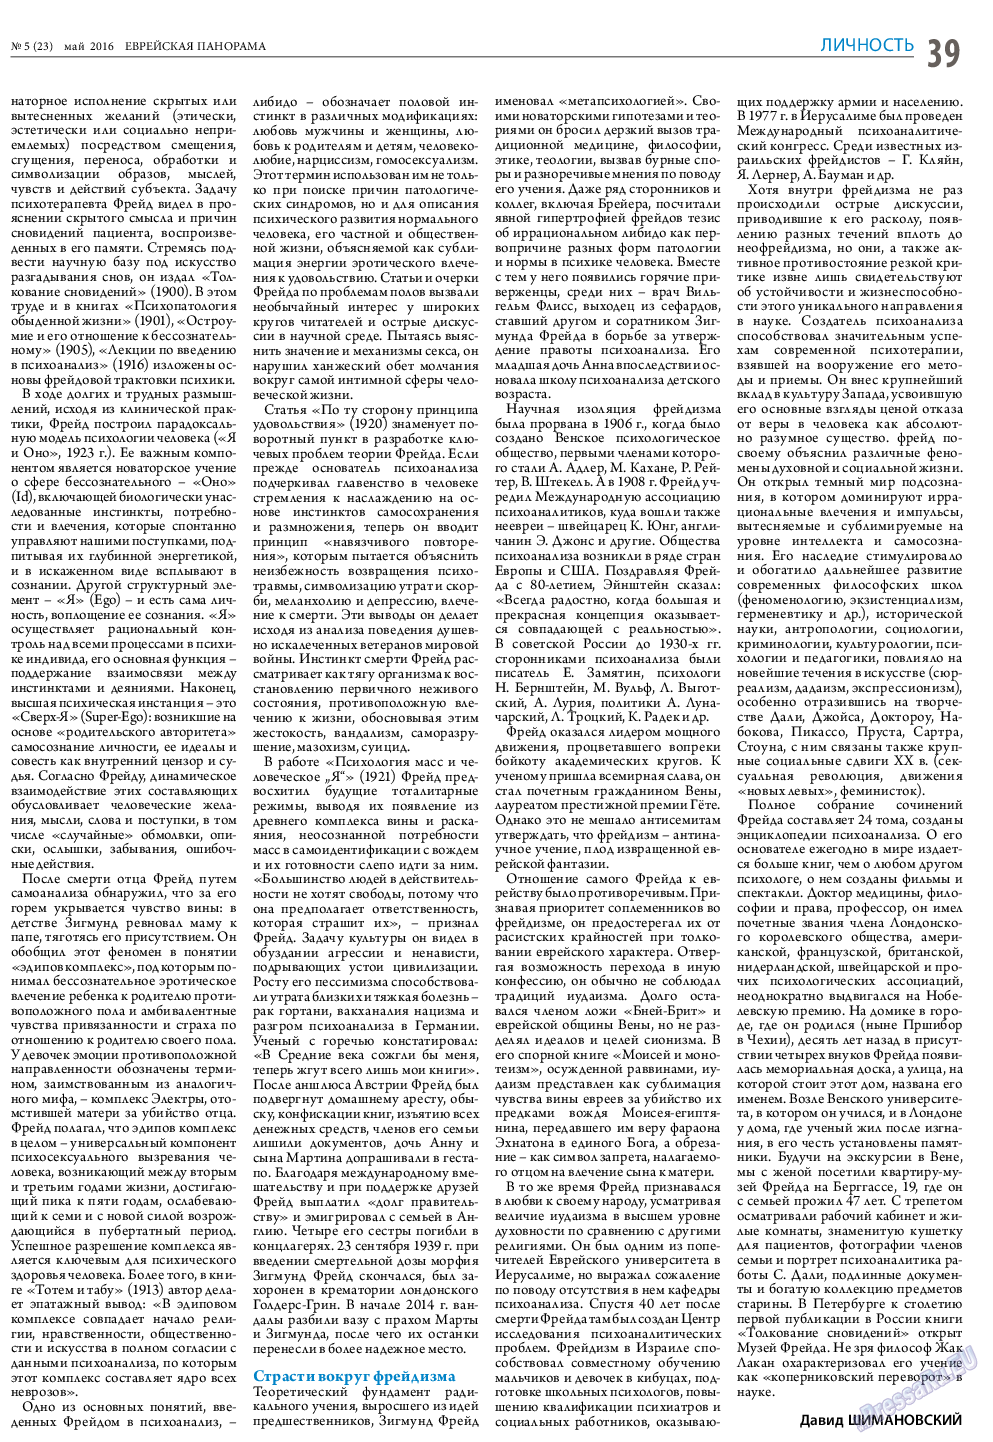 Еврейская панорама (газета). 2016 год, номер 5, стр. 39